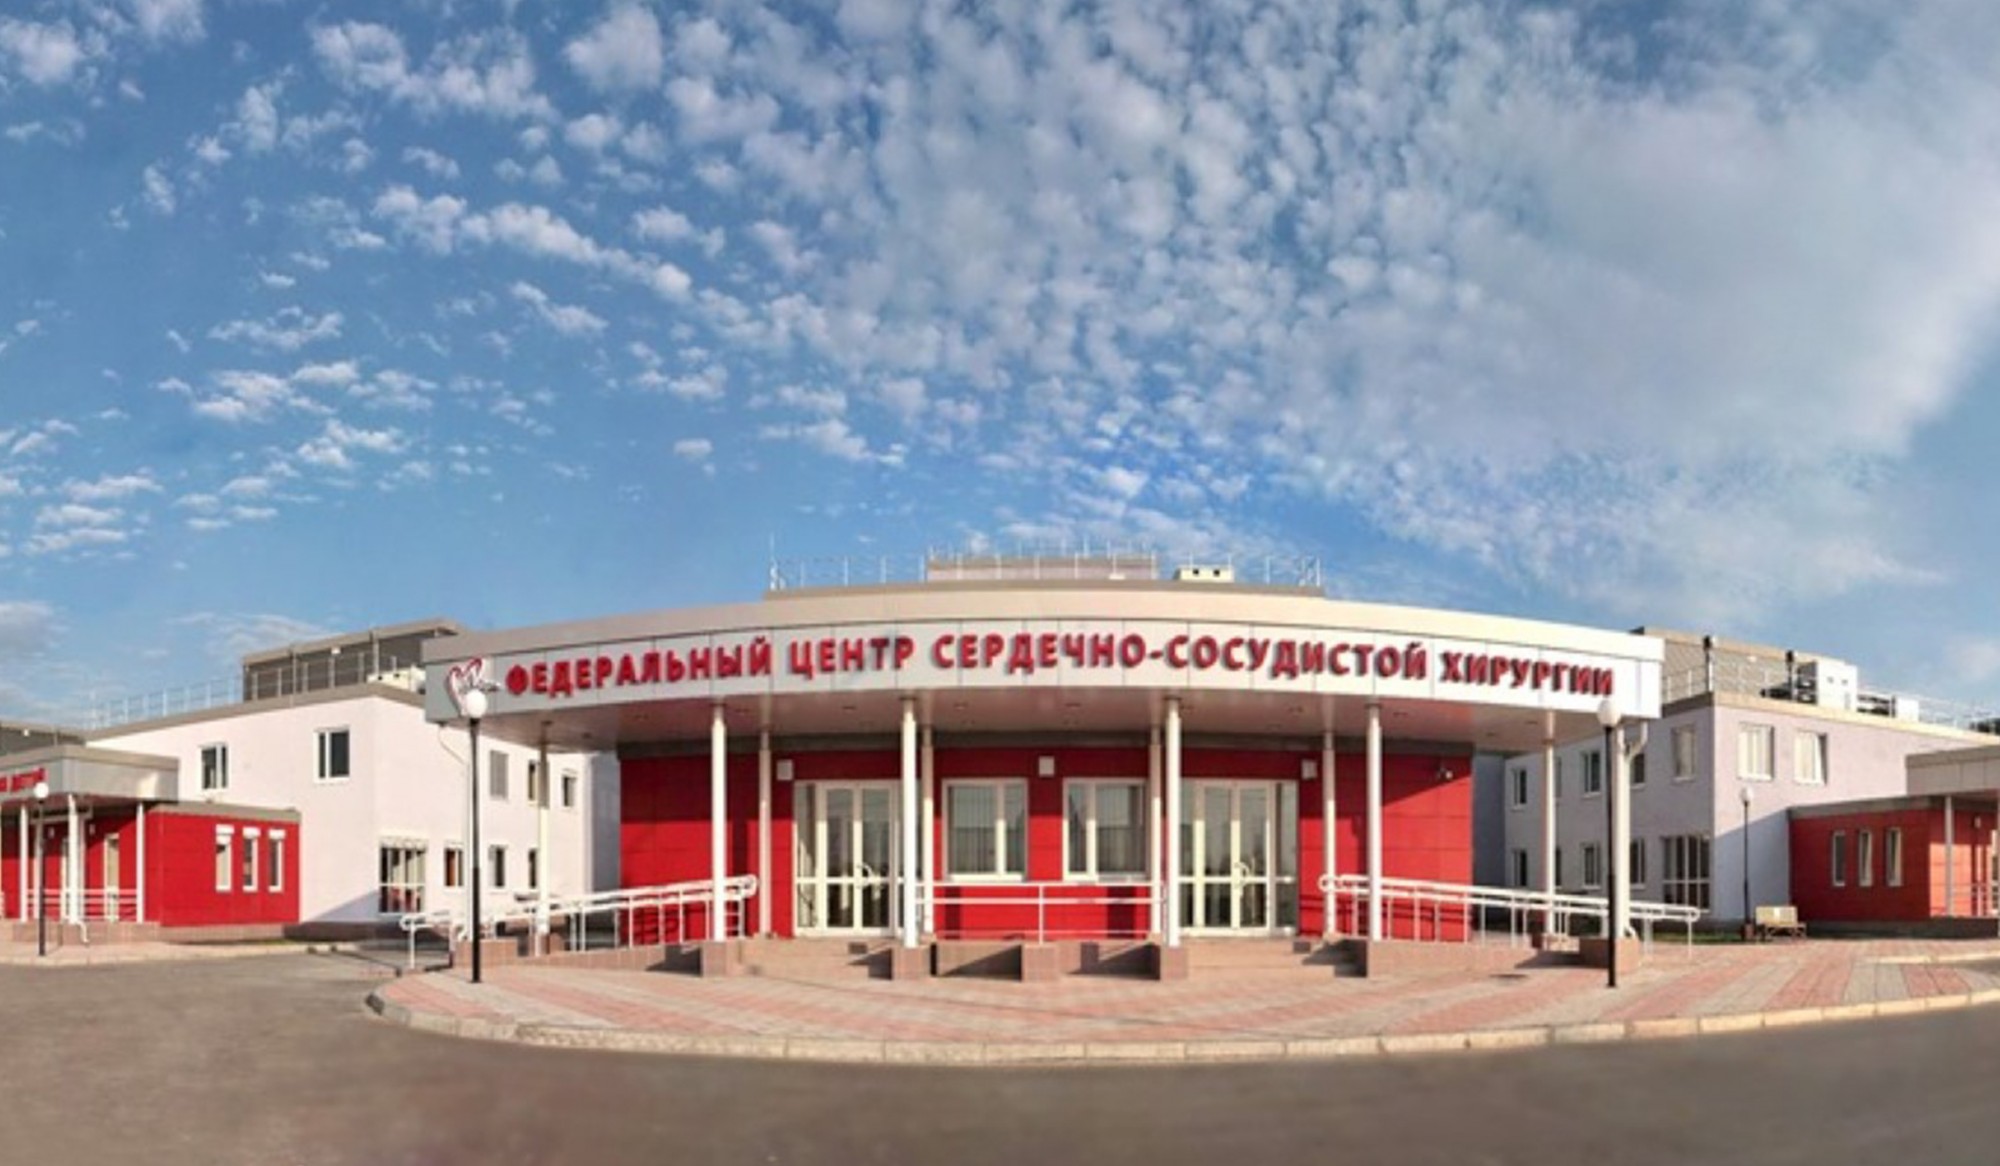 ФГБУ «Федеральный центр сердечно-сосудистой хирургии» Министерства здравоохранения Российской Федерации